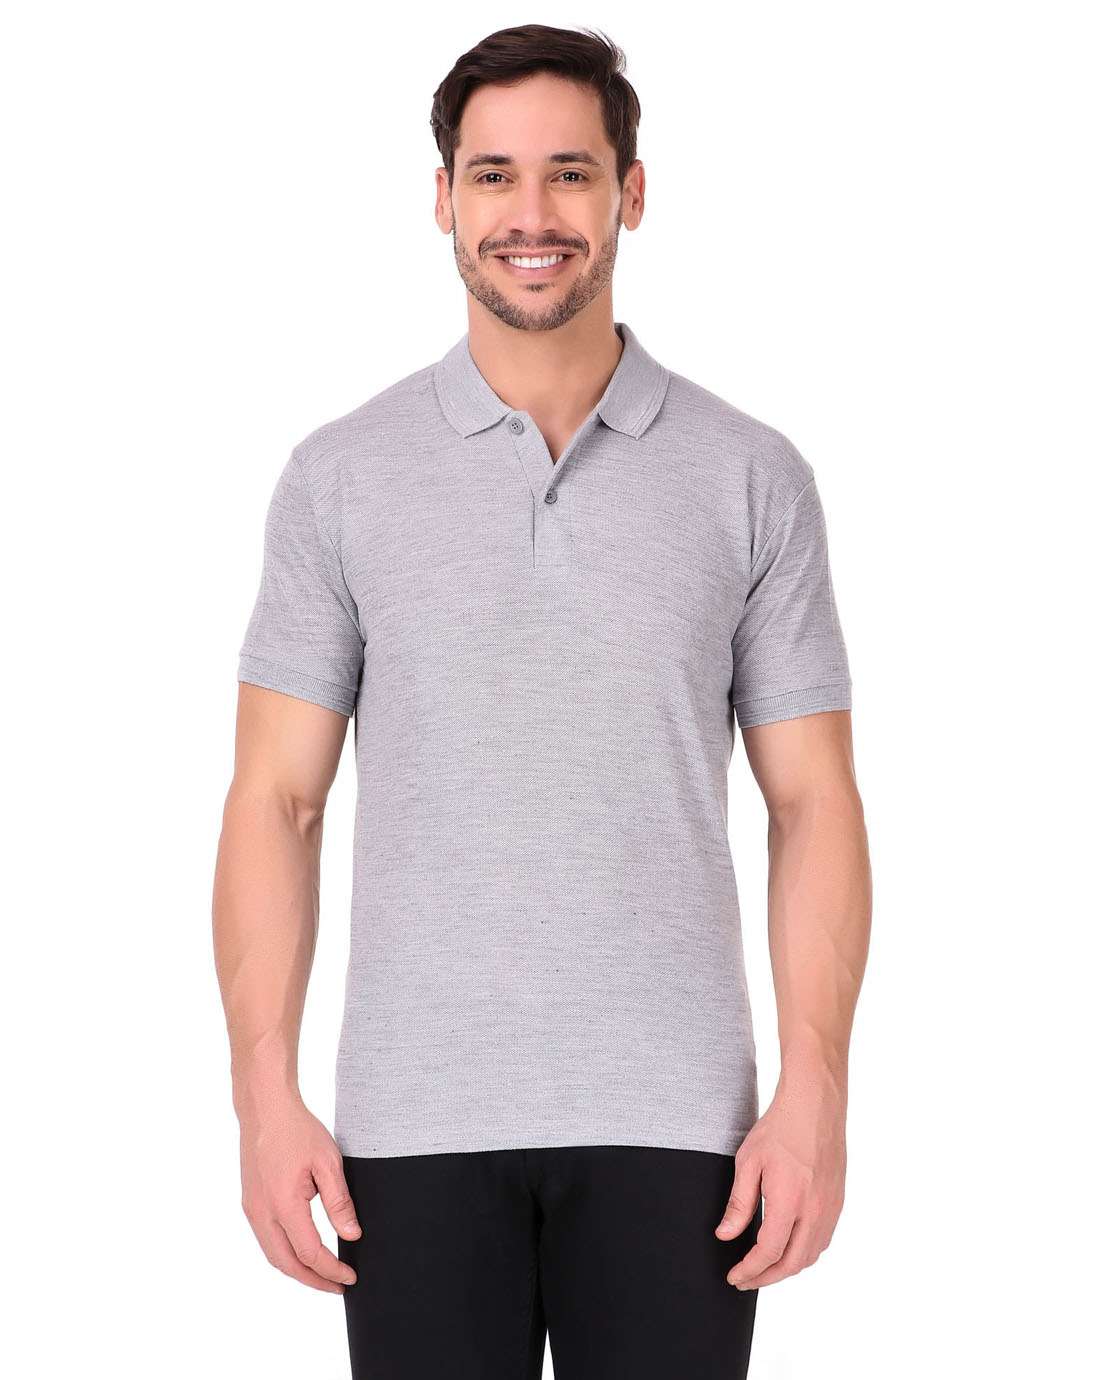 Grey Color T-shirt